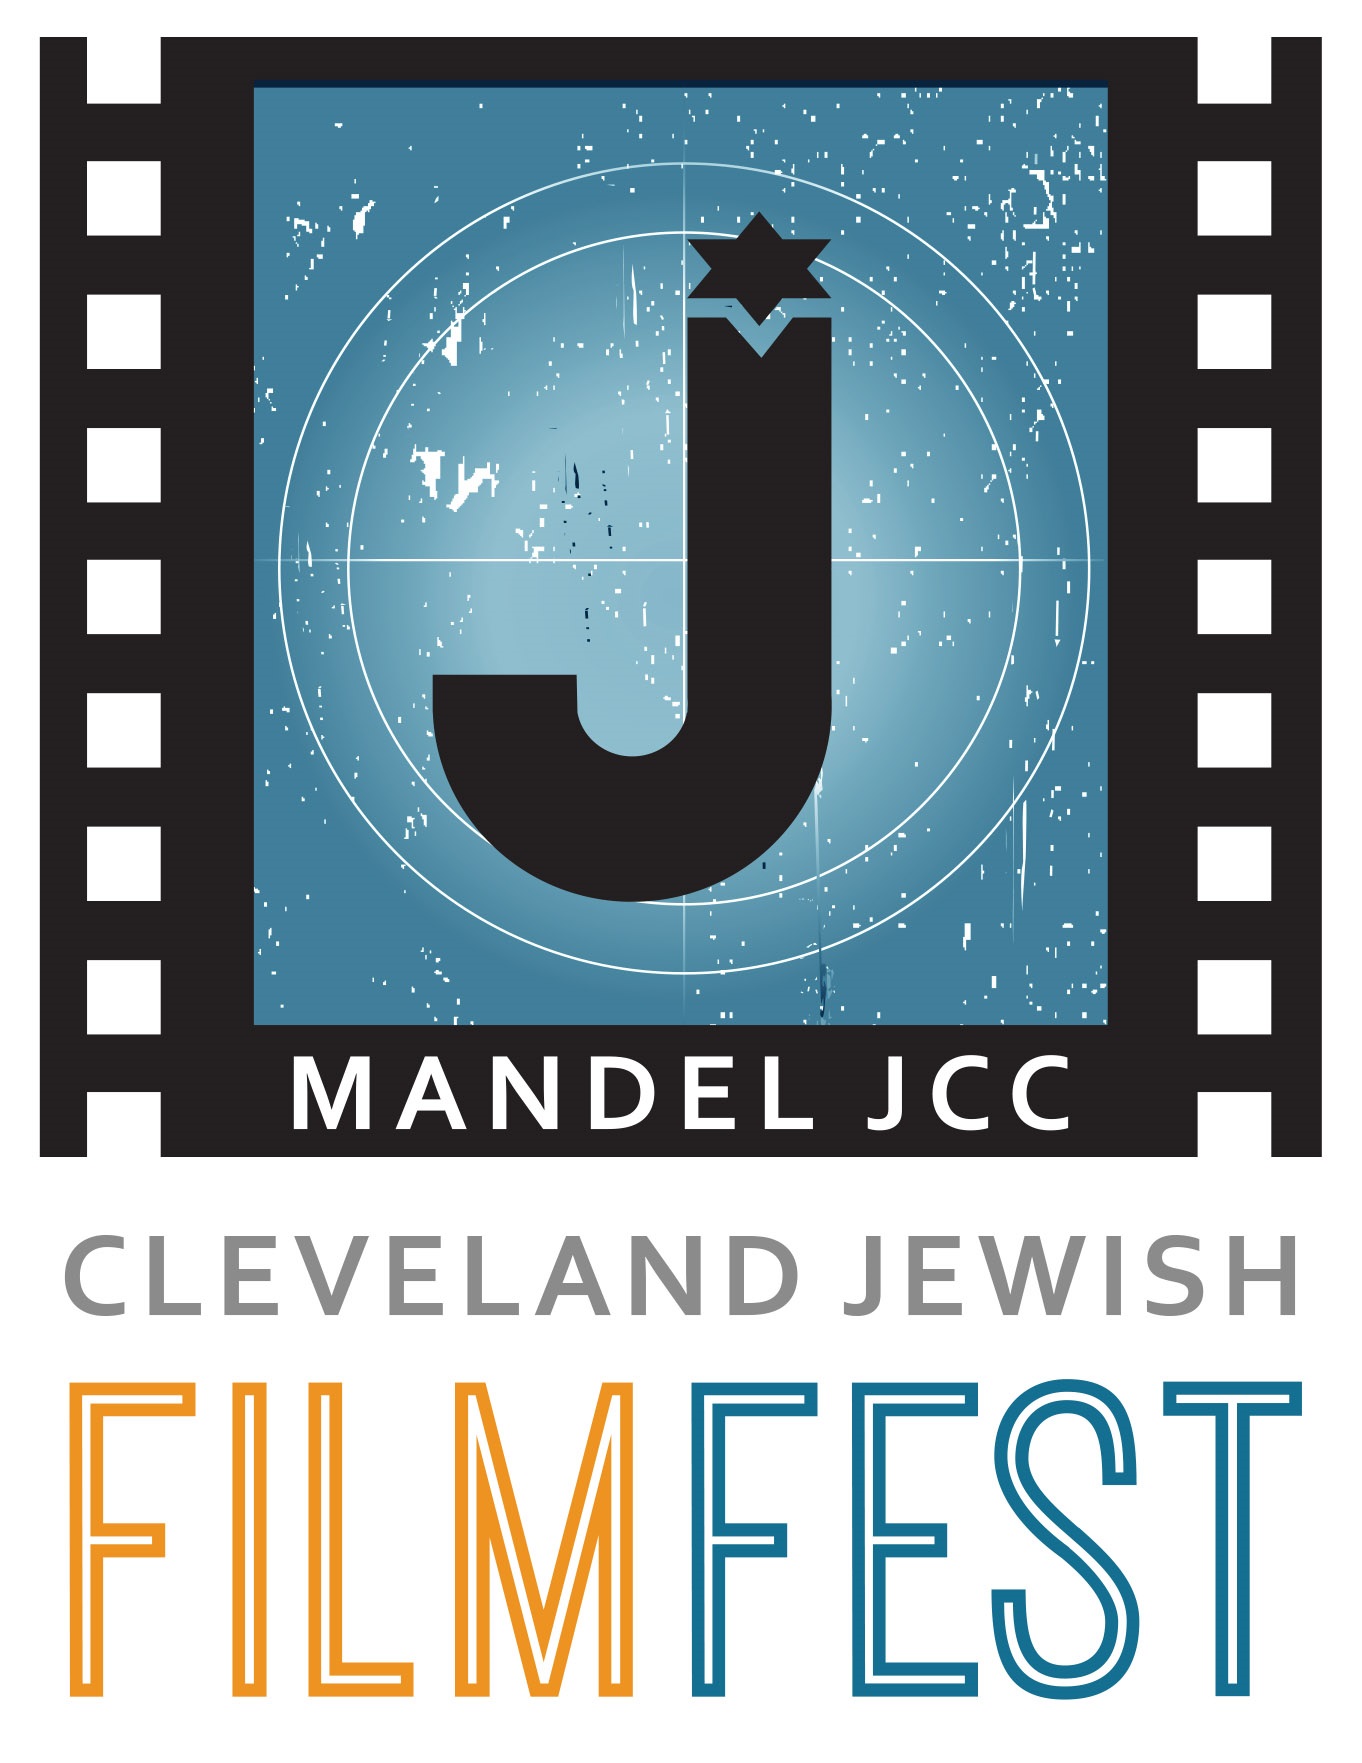 Coroczny Festiwal Filmów Żydowskich Mandel JCC Cleveland, odbywający się w dniach 12–22 października, zaprezentuje 34 filmy z 11 krajów